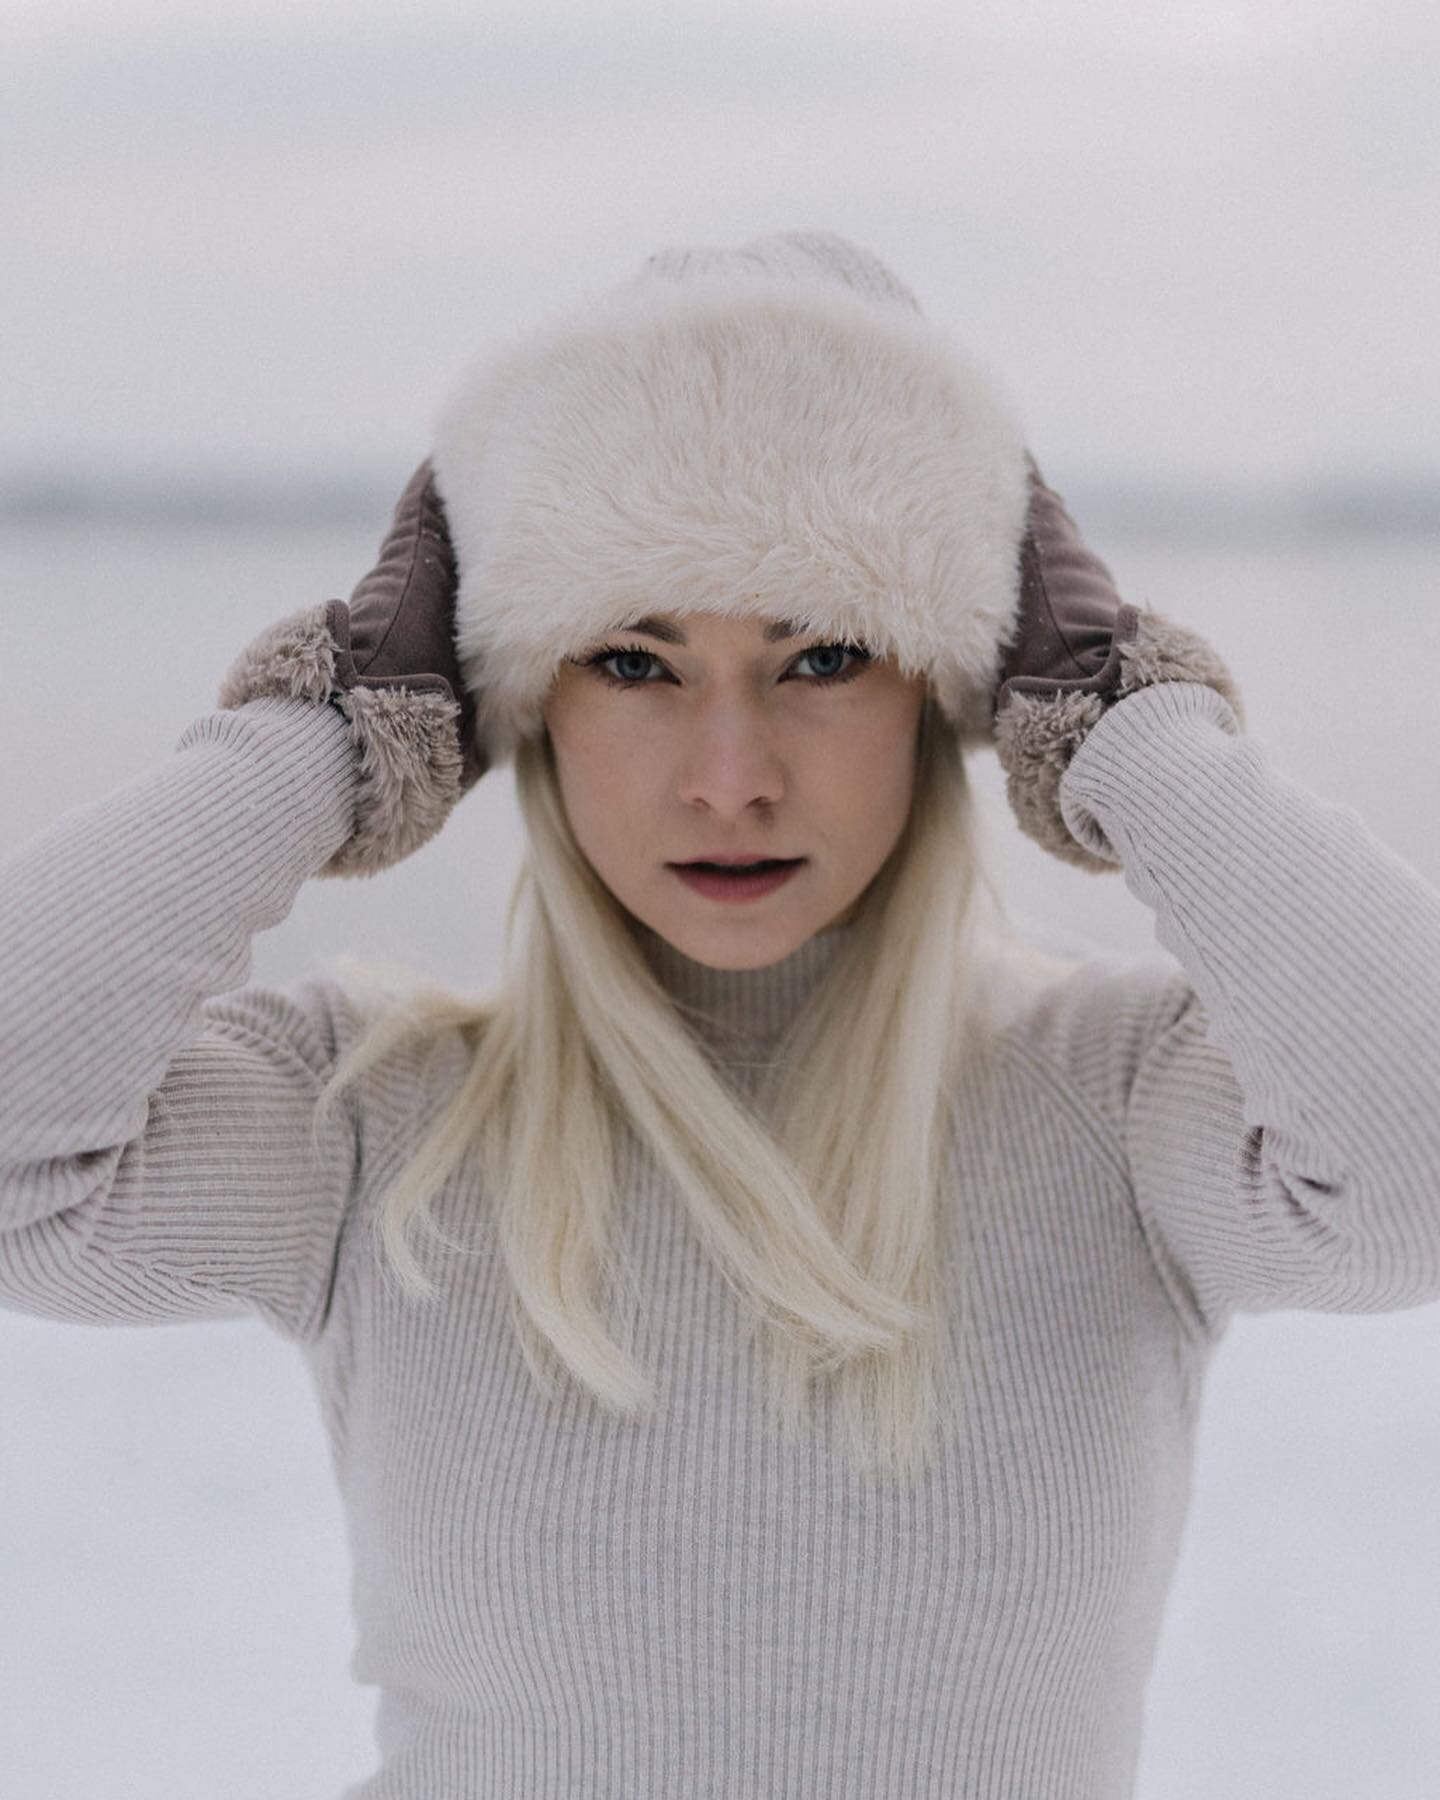 Ihanaa loppuvuotta! ❄️💋

Kiitos upeista kuvista: @hannenurmiphotography 🩵

#winter #finland #snow #talvi